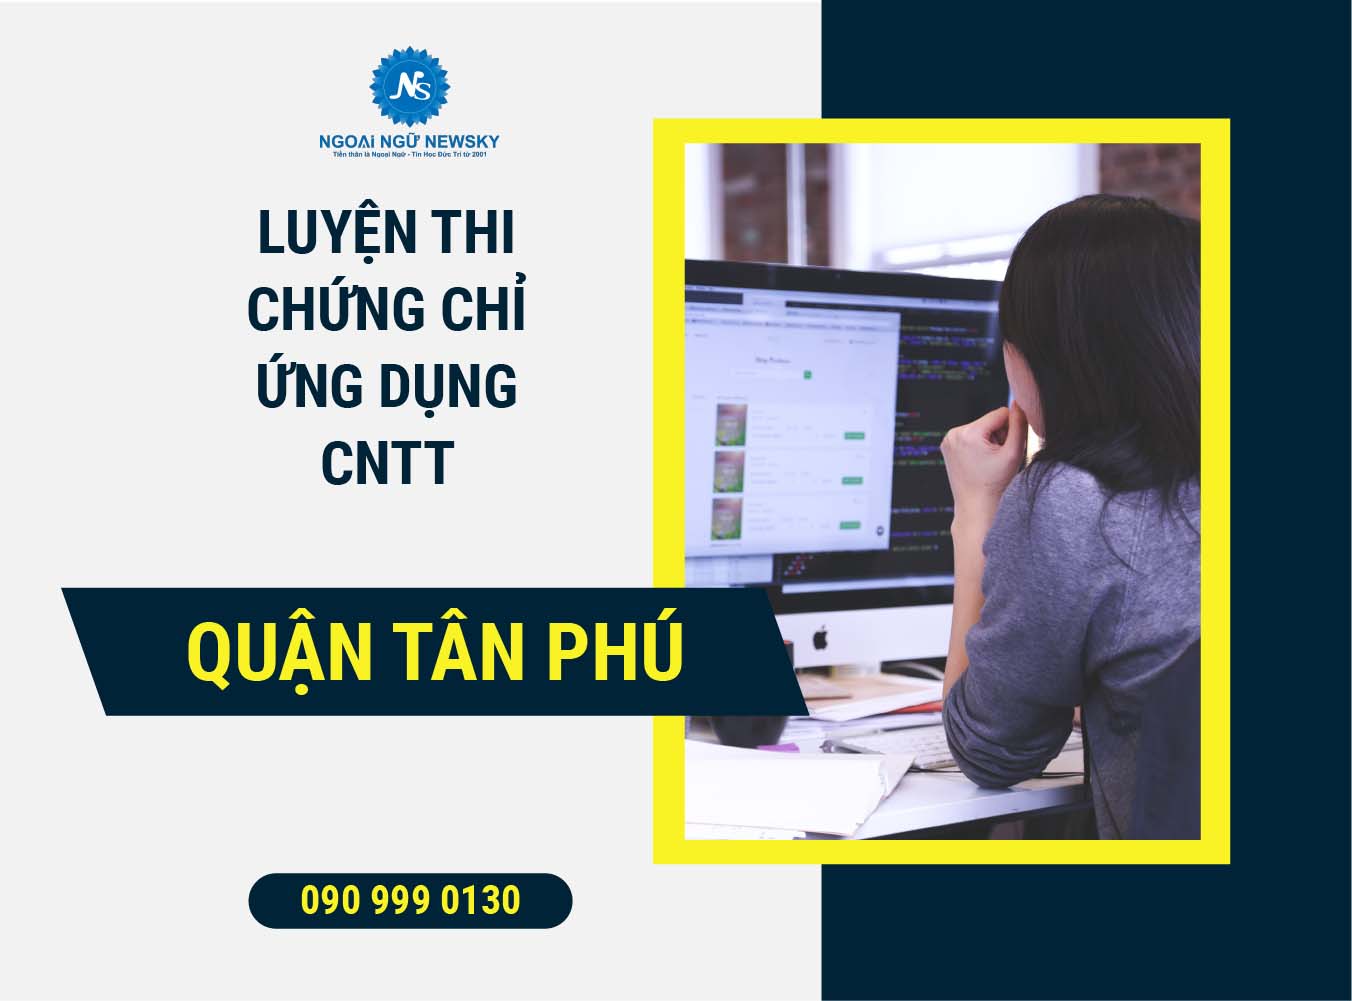 Luyện thi chứng chỉ ứng dụng CNTT quận Tân Phú